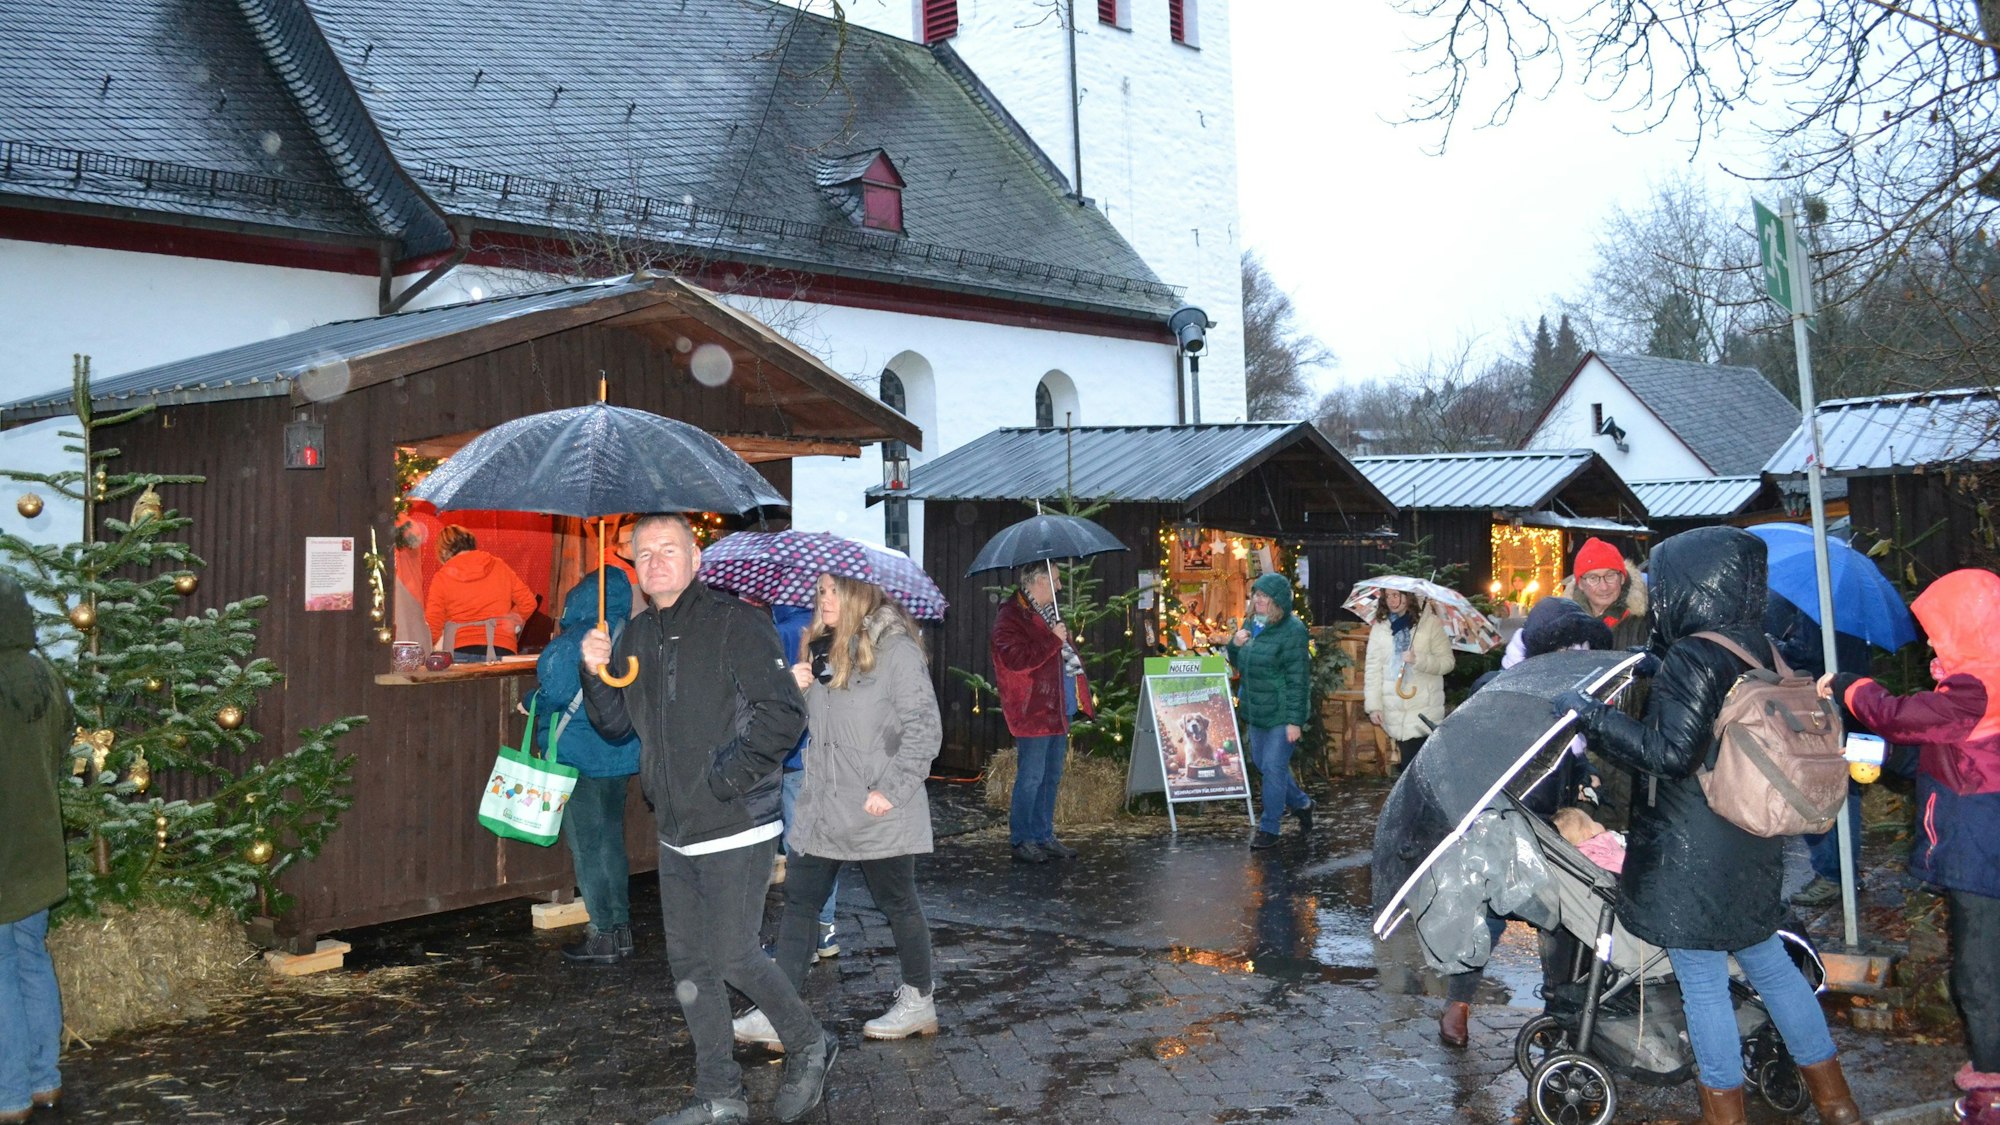 Trotz des Wetters strömten die Besucher zur heimeligen Döörper Weihnacht in Ruppichteroth.